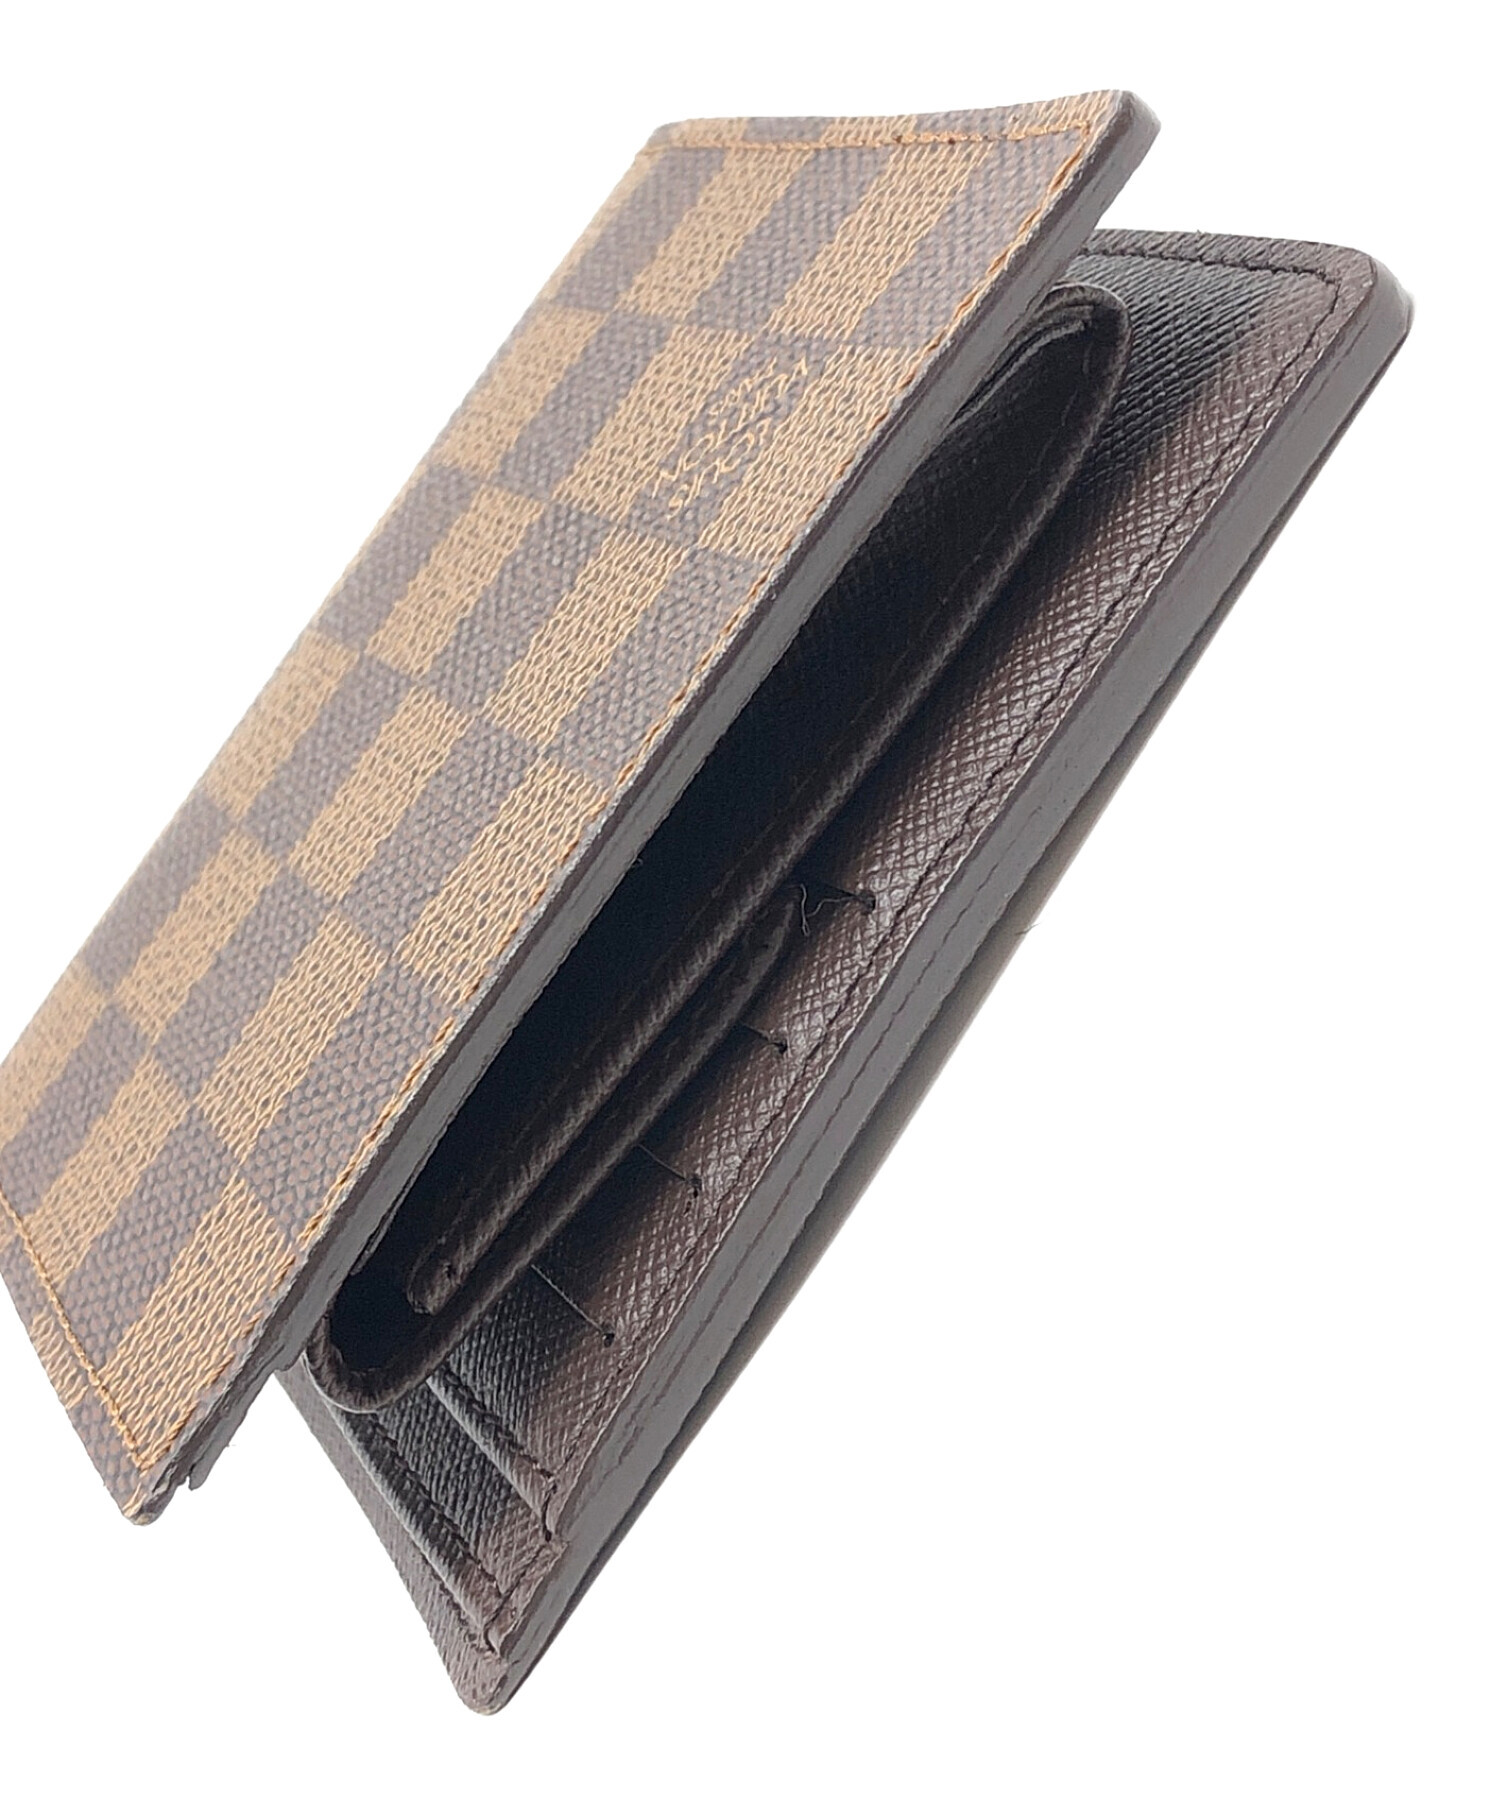 LOUIS VUITTON (ルイ ヴィトン) 2つ折り財布 ダミエ ポルトフォイユ･マルコ サイズ:実寸サイズにてご確認ください。